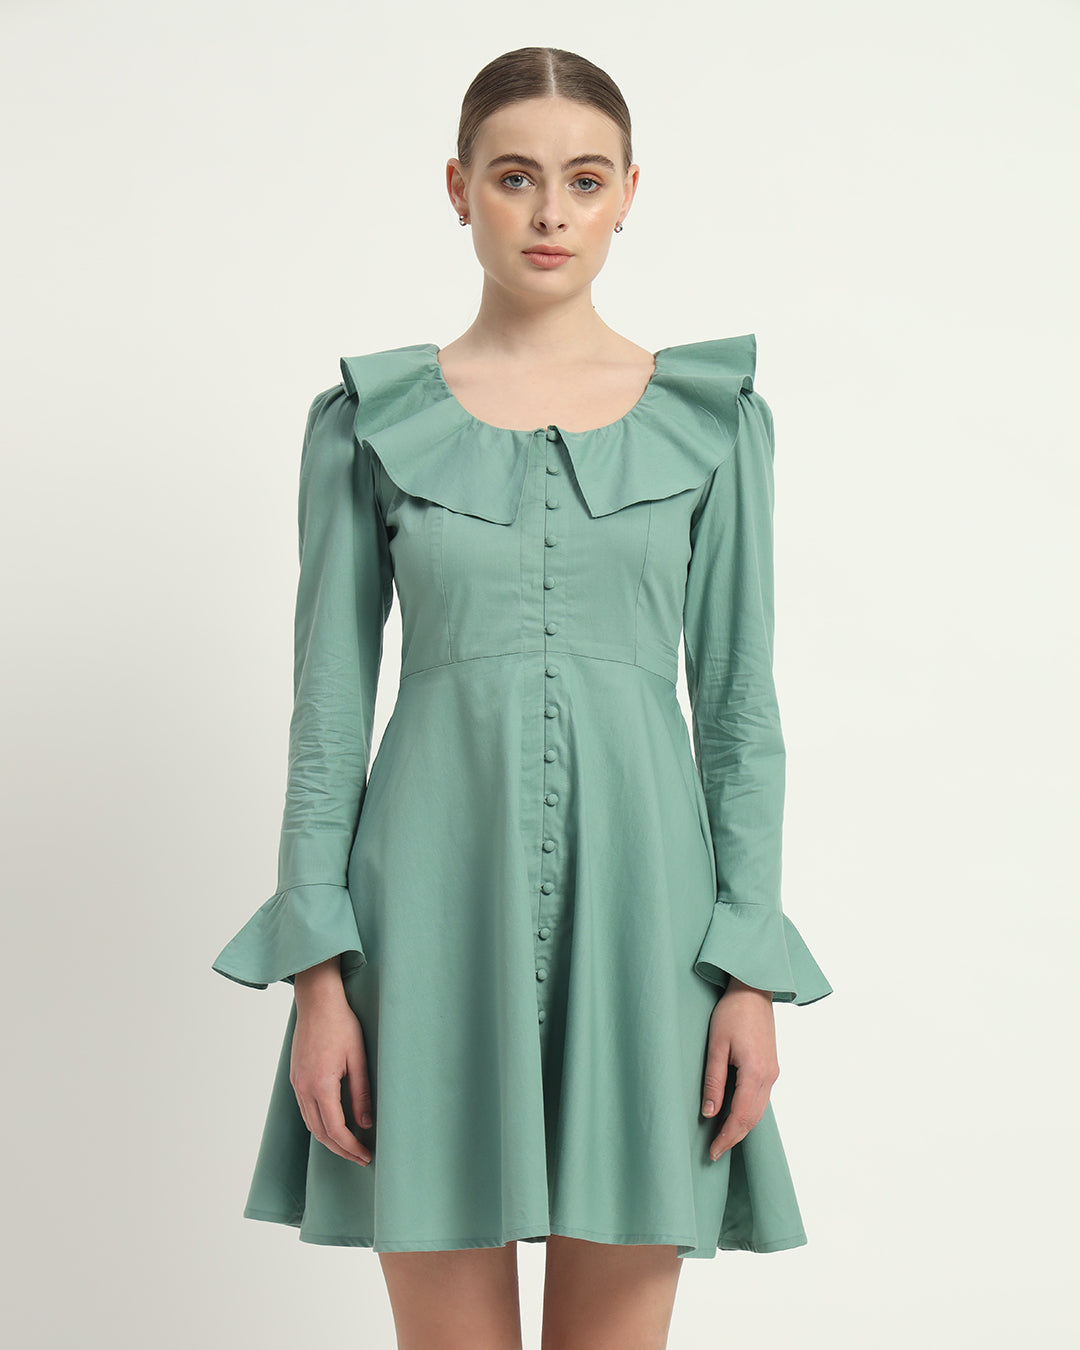 The Fredonia Mint Cotton Dress